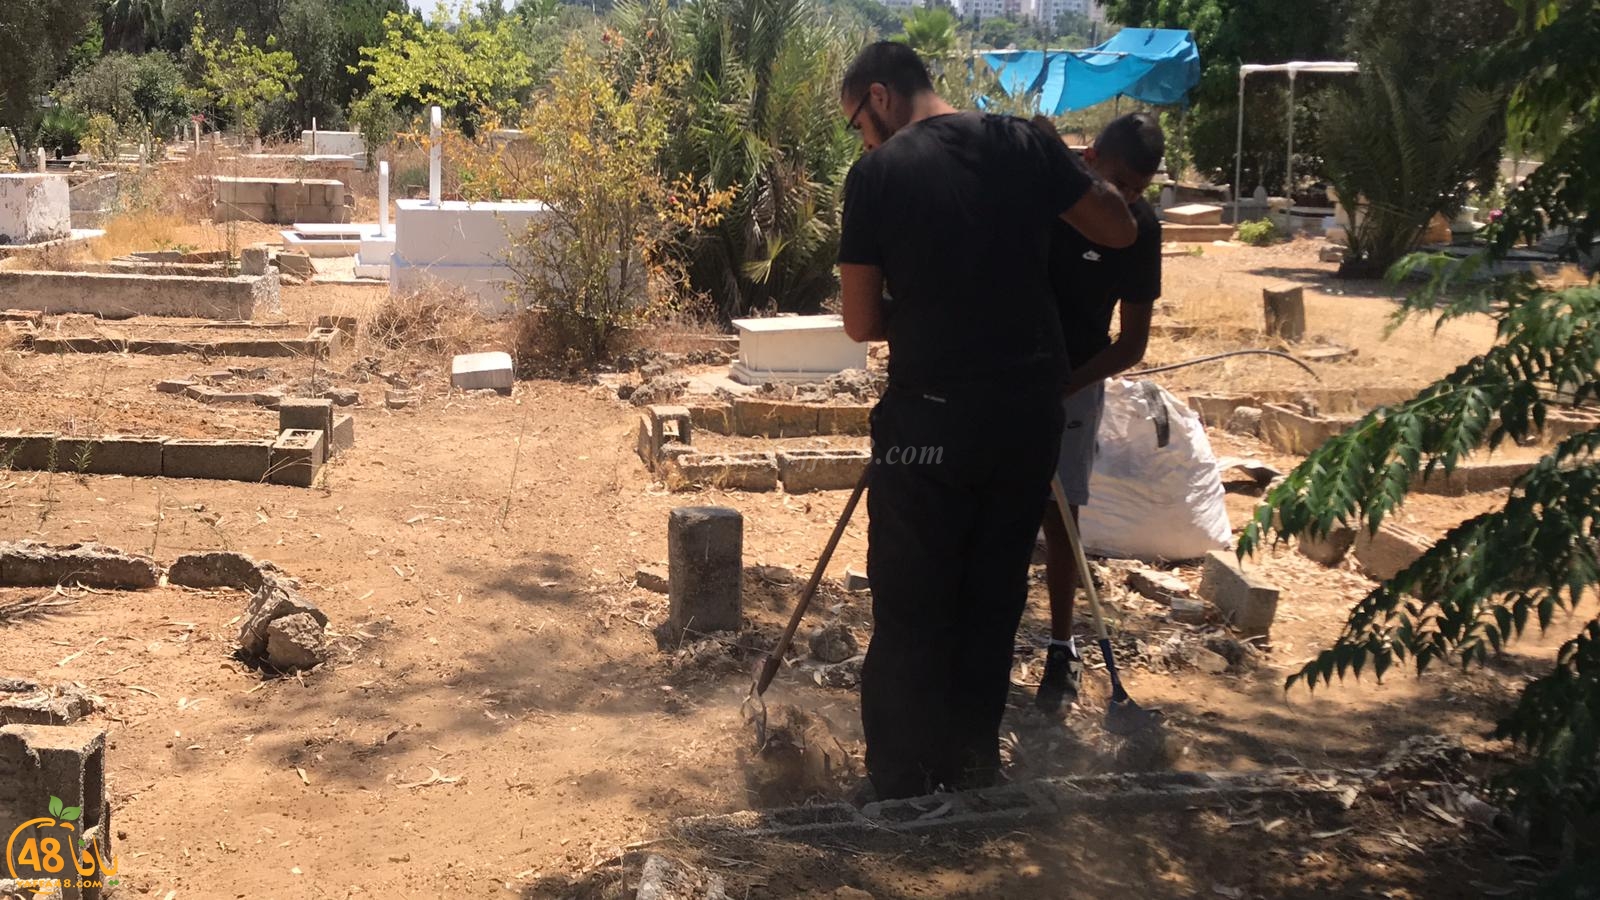  بالصور: شباب كشاف النادي الاسلامي في مشروع لتنظيف مقبرة طاسو